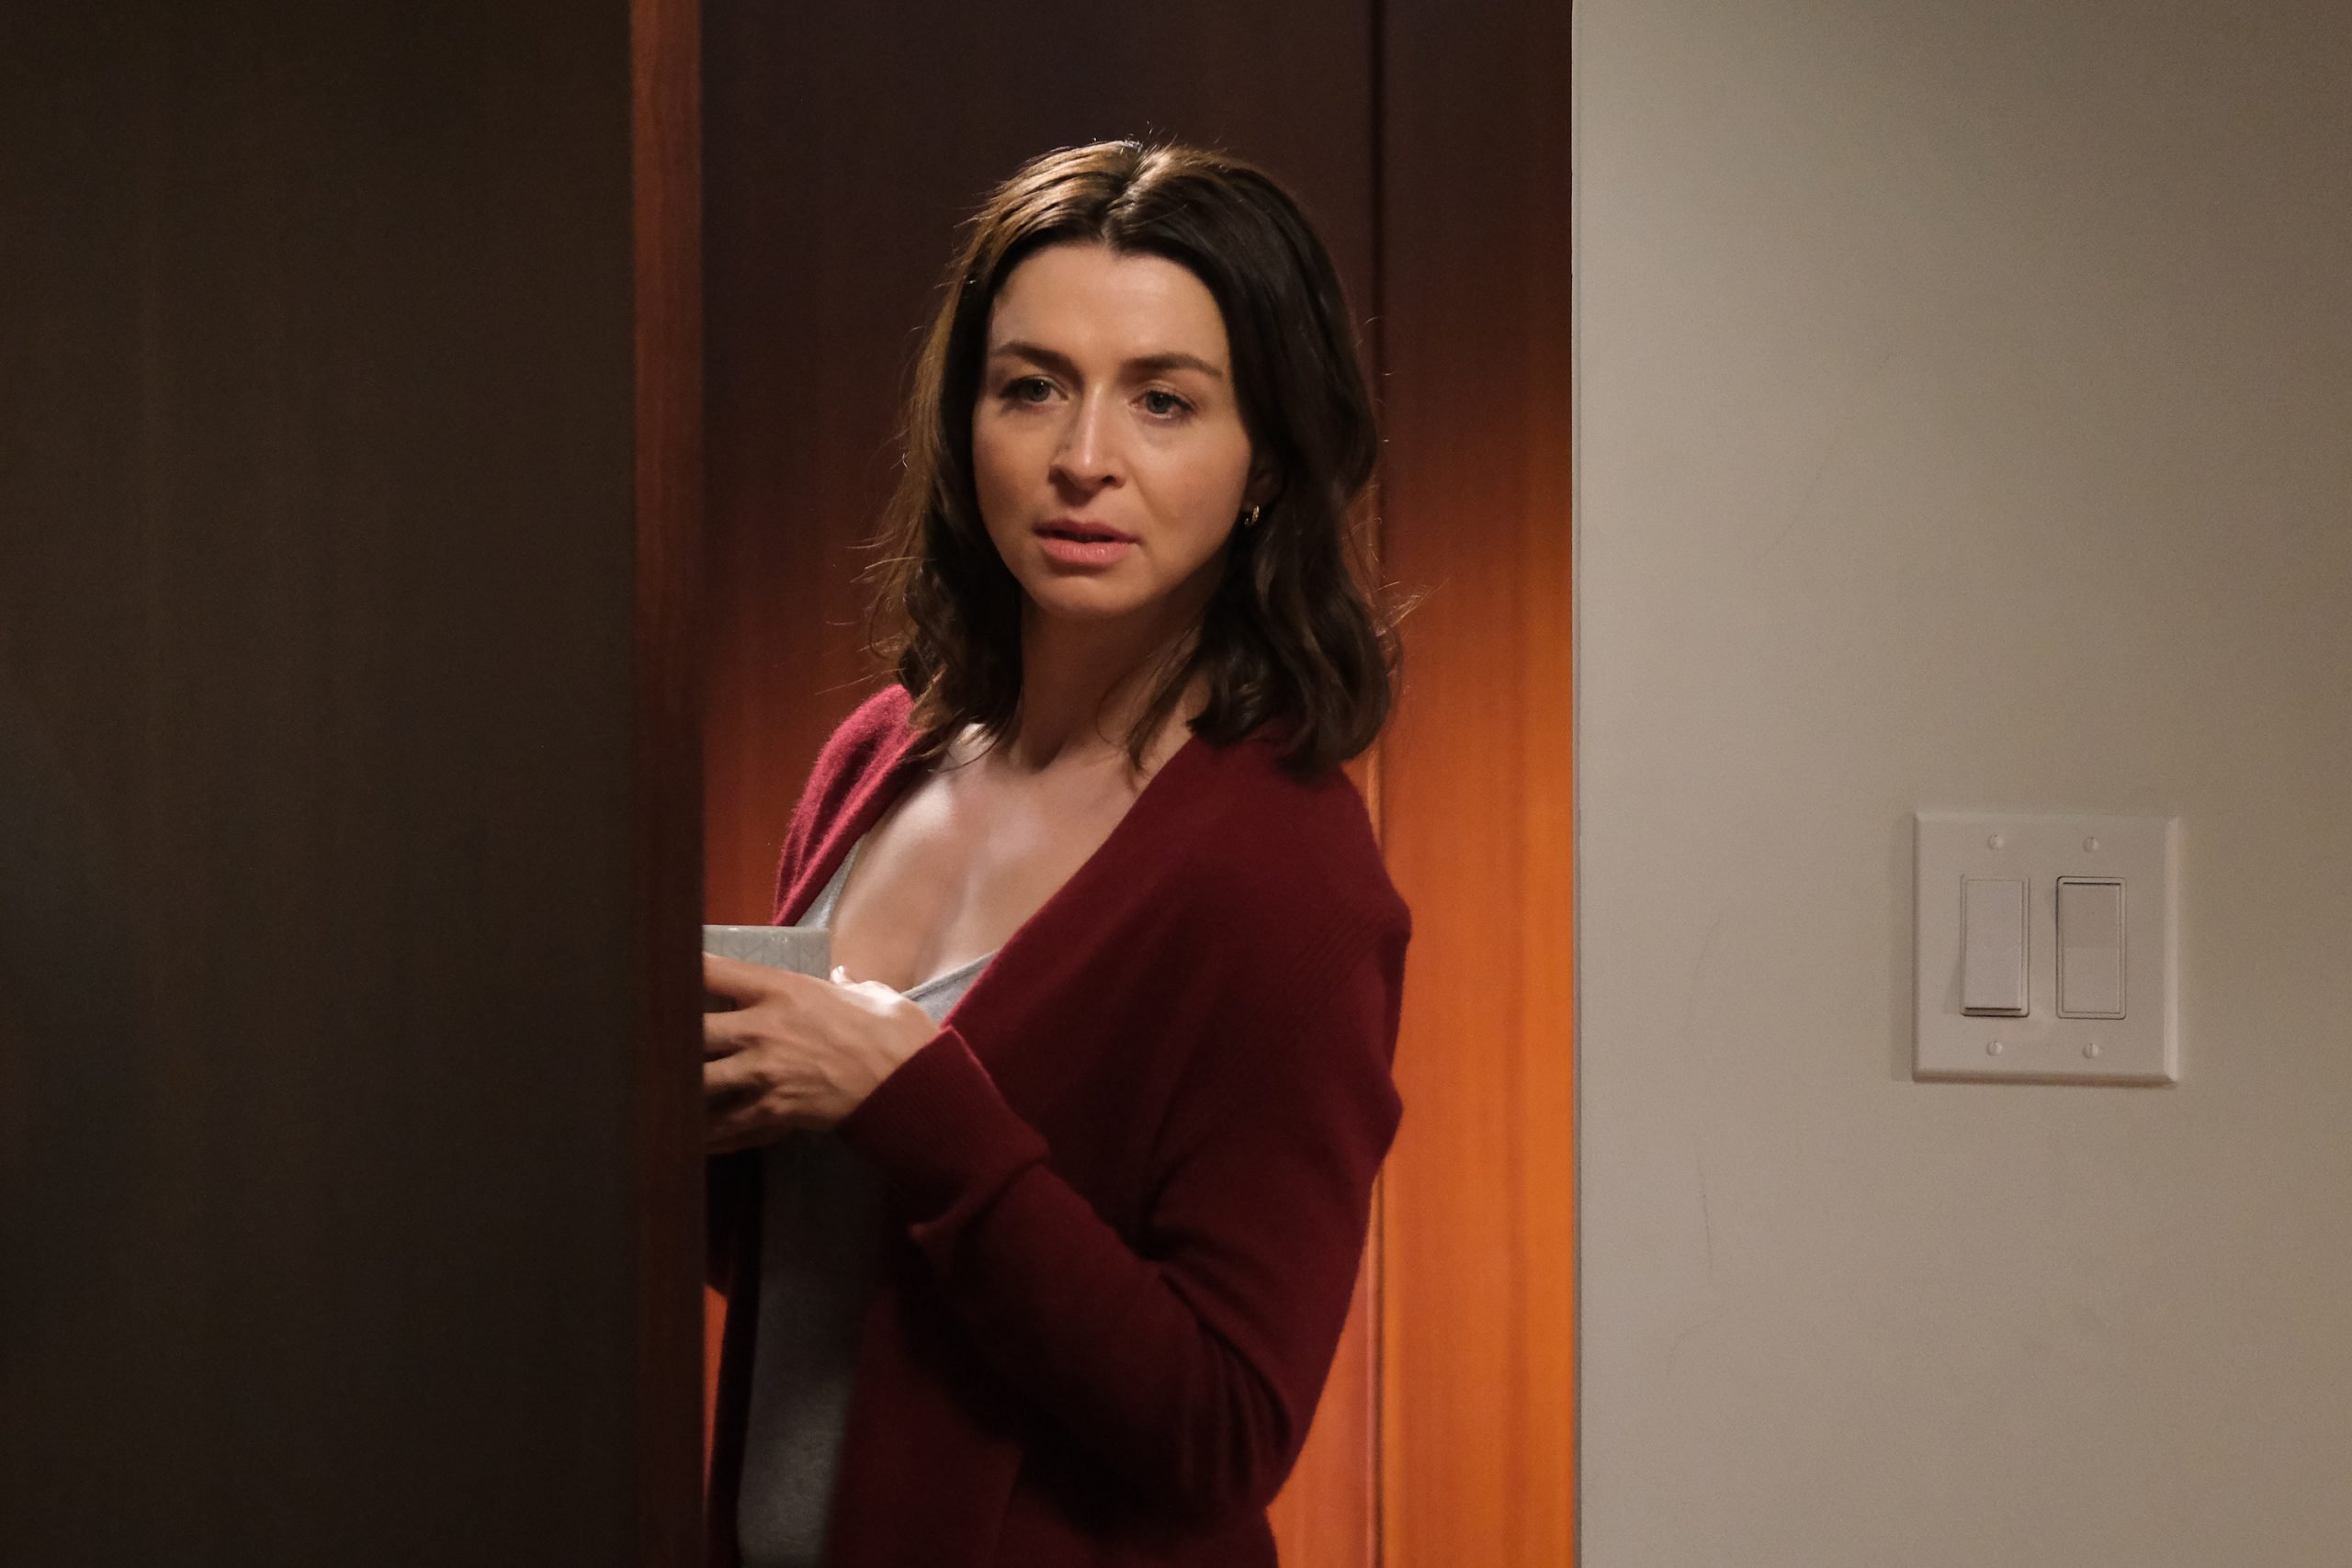 Caterina Scorsone as Amelia Shepherd on 'Grey's Anatomy' stands by an open door.